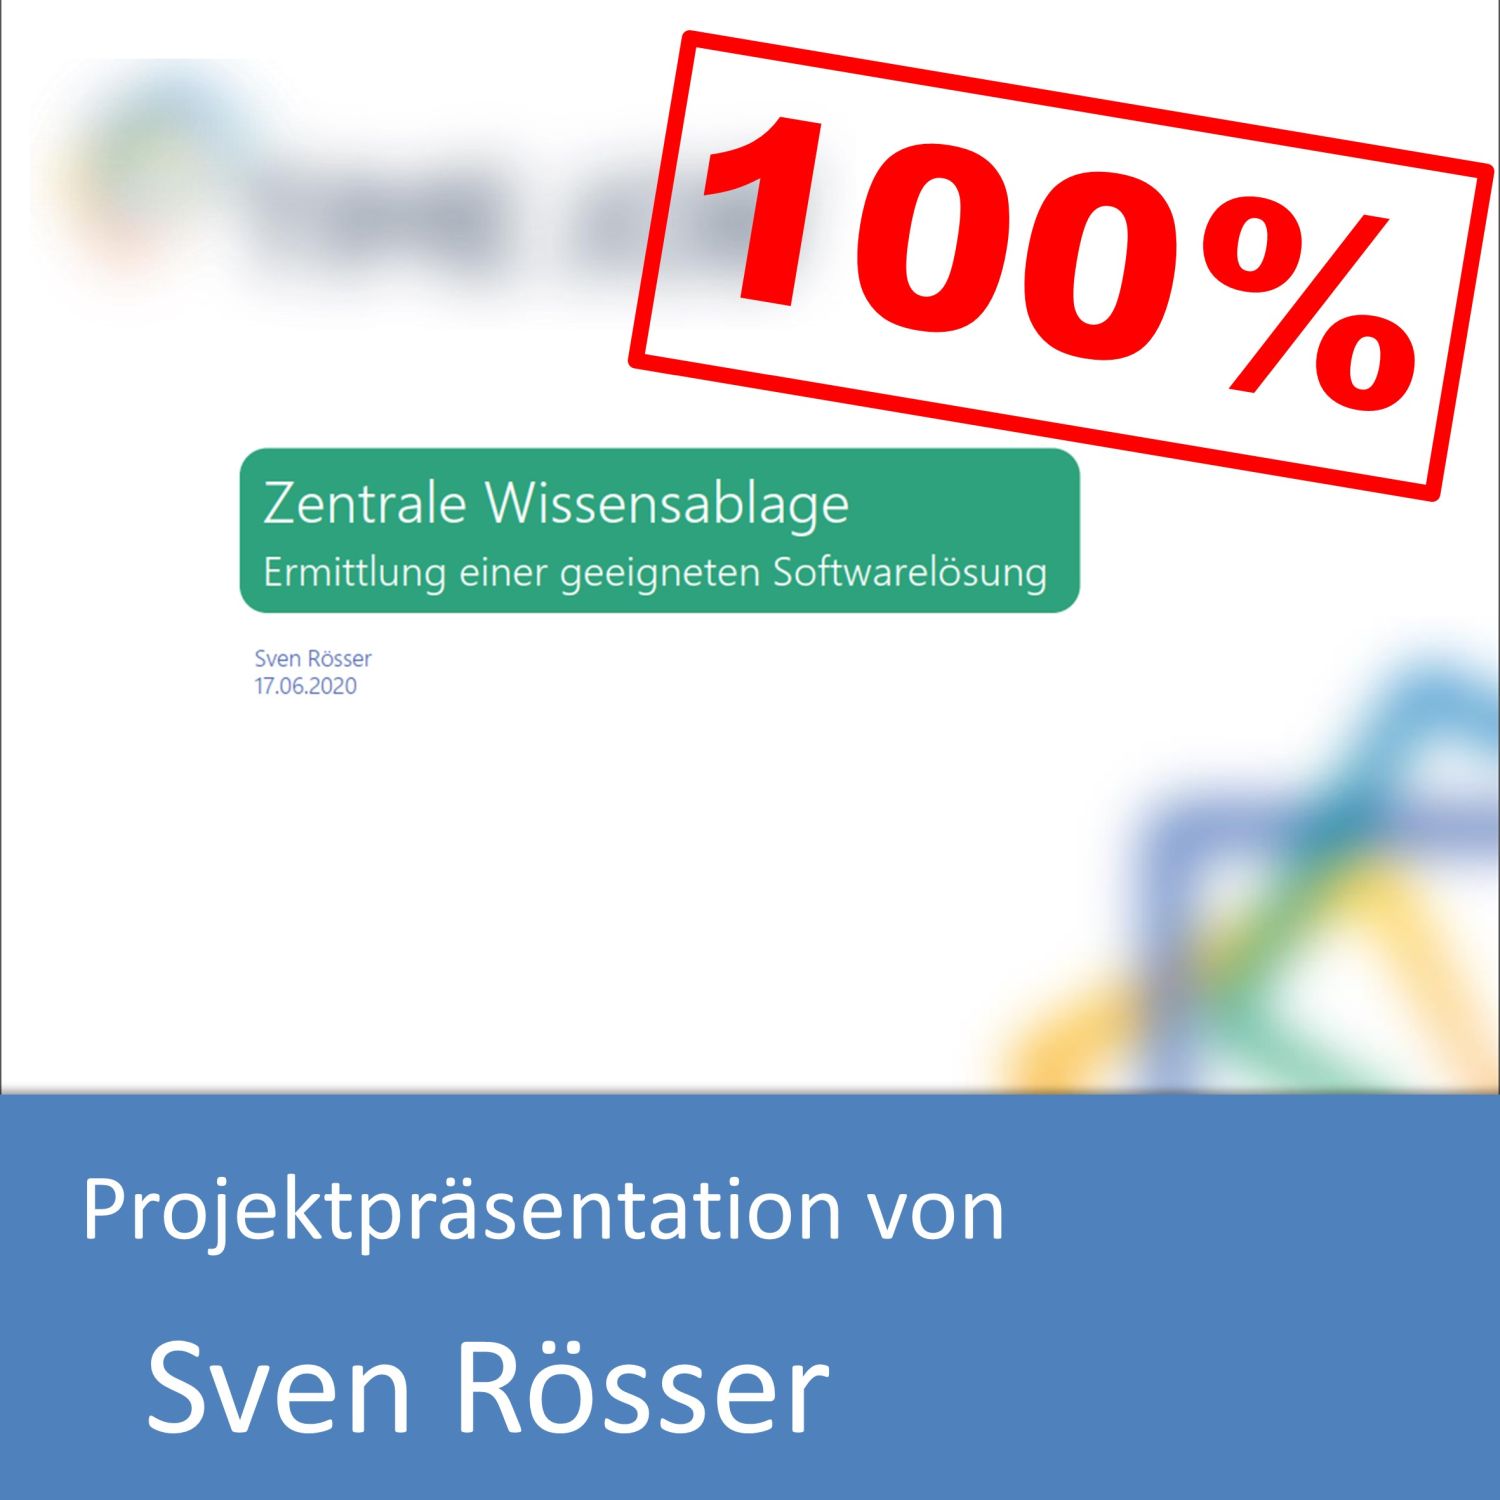 Projektpräsentation zum Informatikkaufmann von Sven Rösser (mit 100% bewertet)